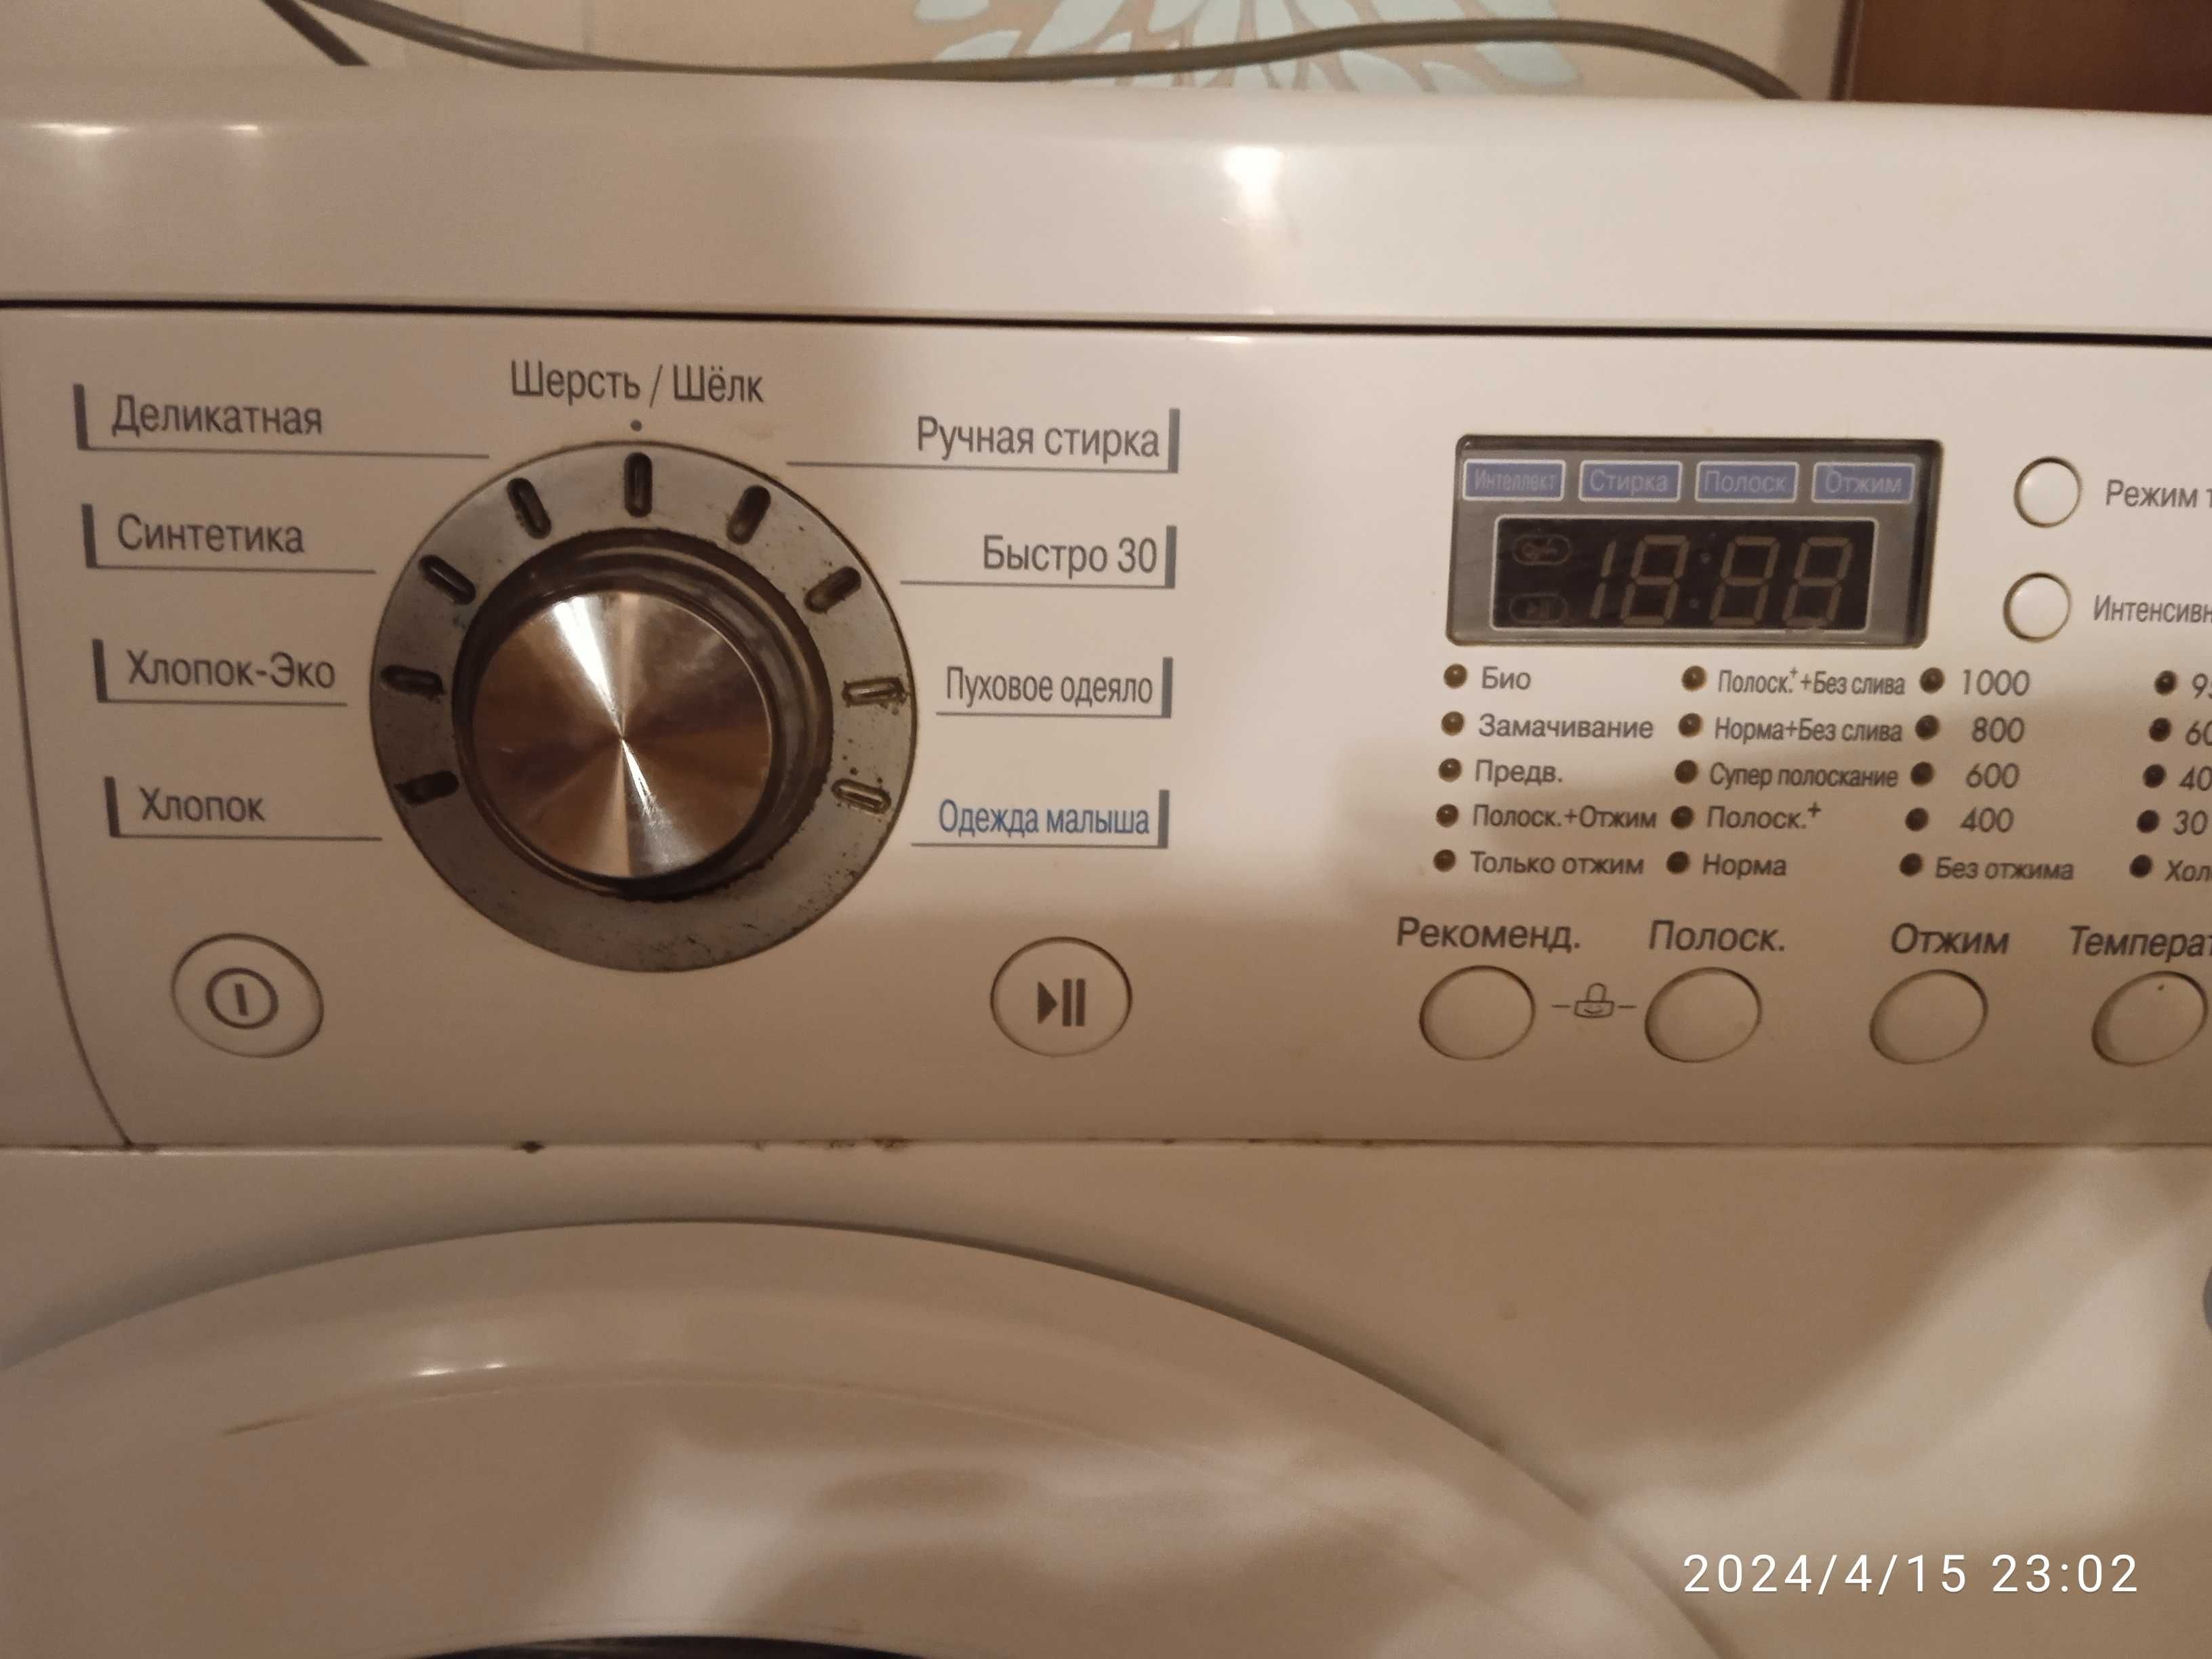 Продам пральну машинку автомат LG  в гарному робочому стані  4000грн